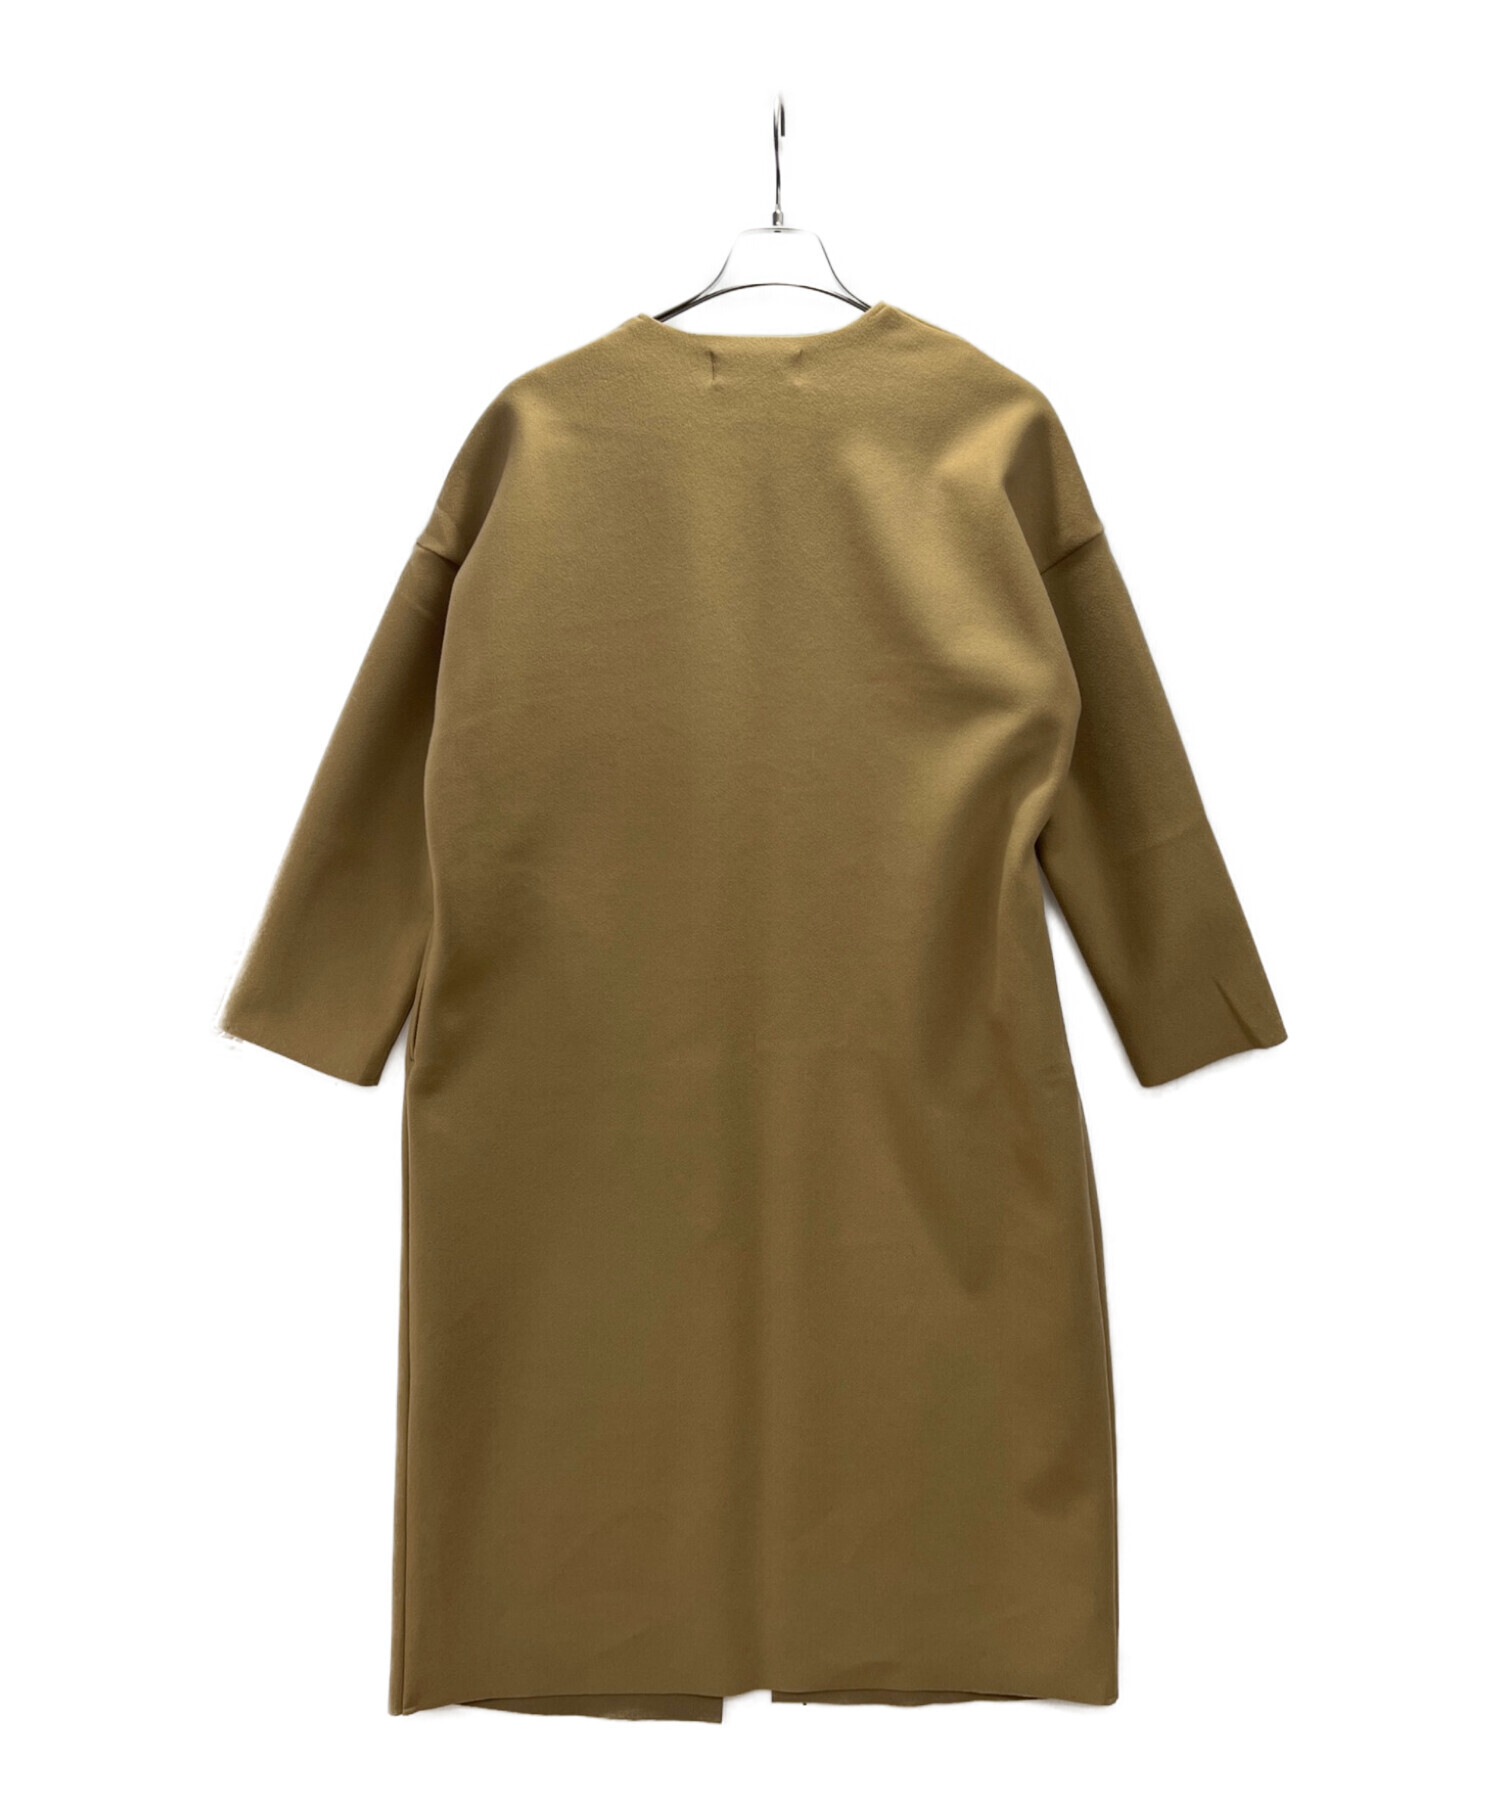 chocol raffine robe (ショコラフィネローブ) ノーカラーロングコート ベージュ サイズ:SIZE FREE 未使用品